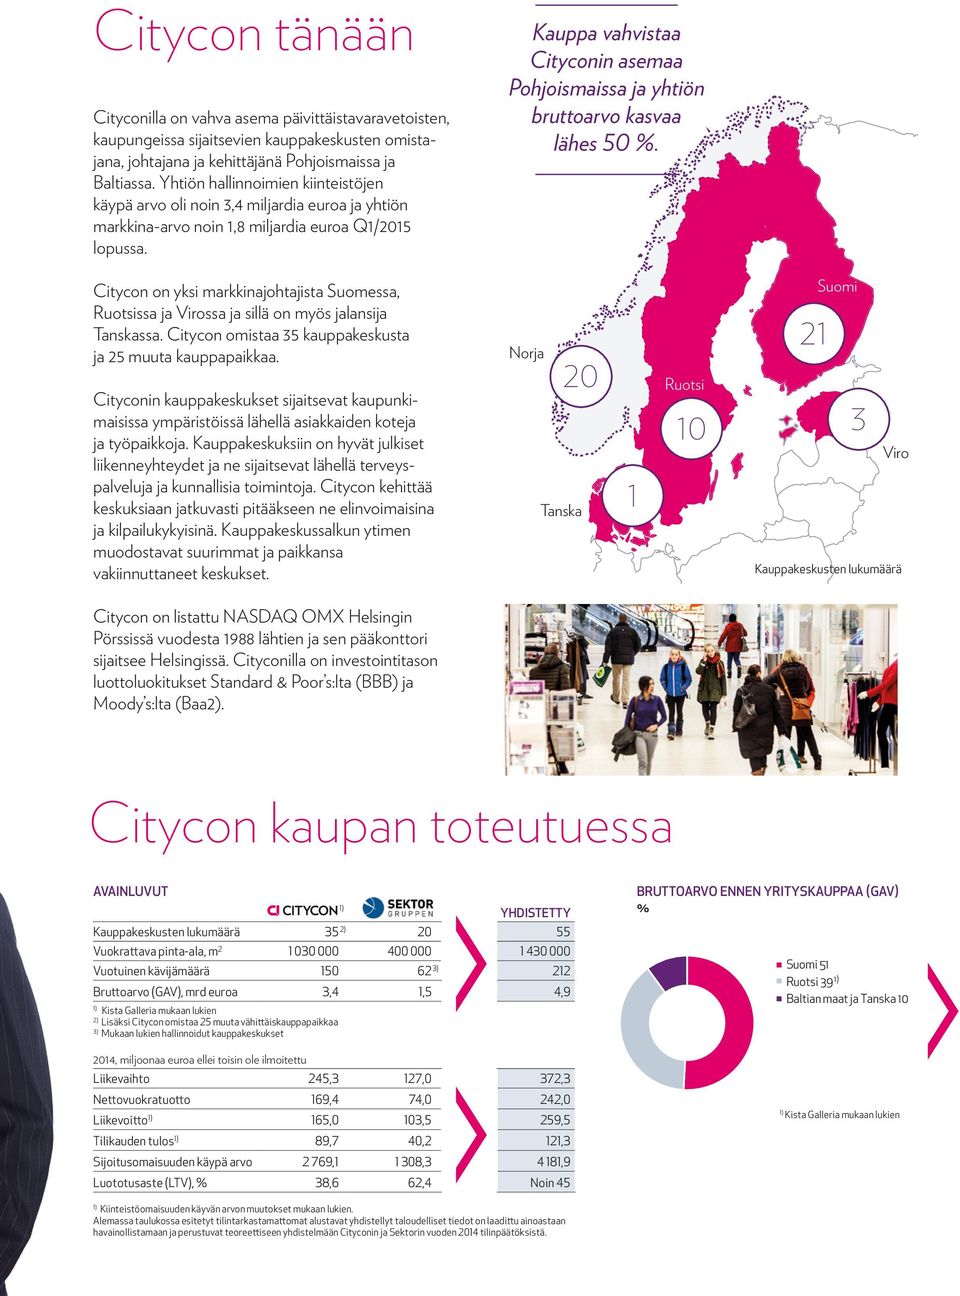 Kauppa vahvistaa Cityconin asemaa Pohjoismaissa ja yhtiön bruttoarvo kasvaa lähes 50 %. Citycon on yksi markkinajohtajista Suomessa, Ruotsissa ja Virossa ja sillä on myös jalansija Tanskassa.